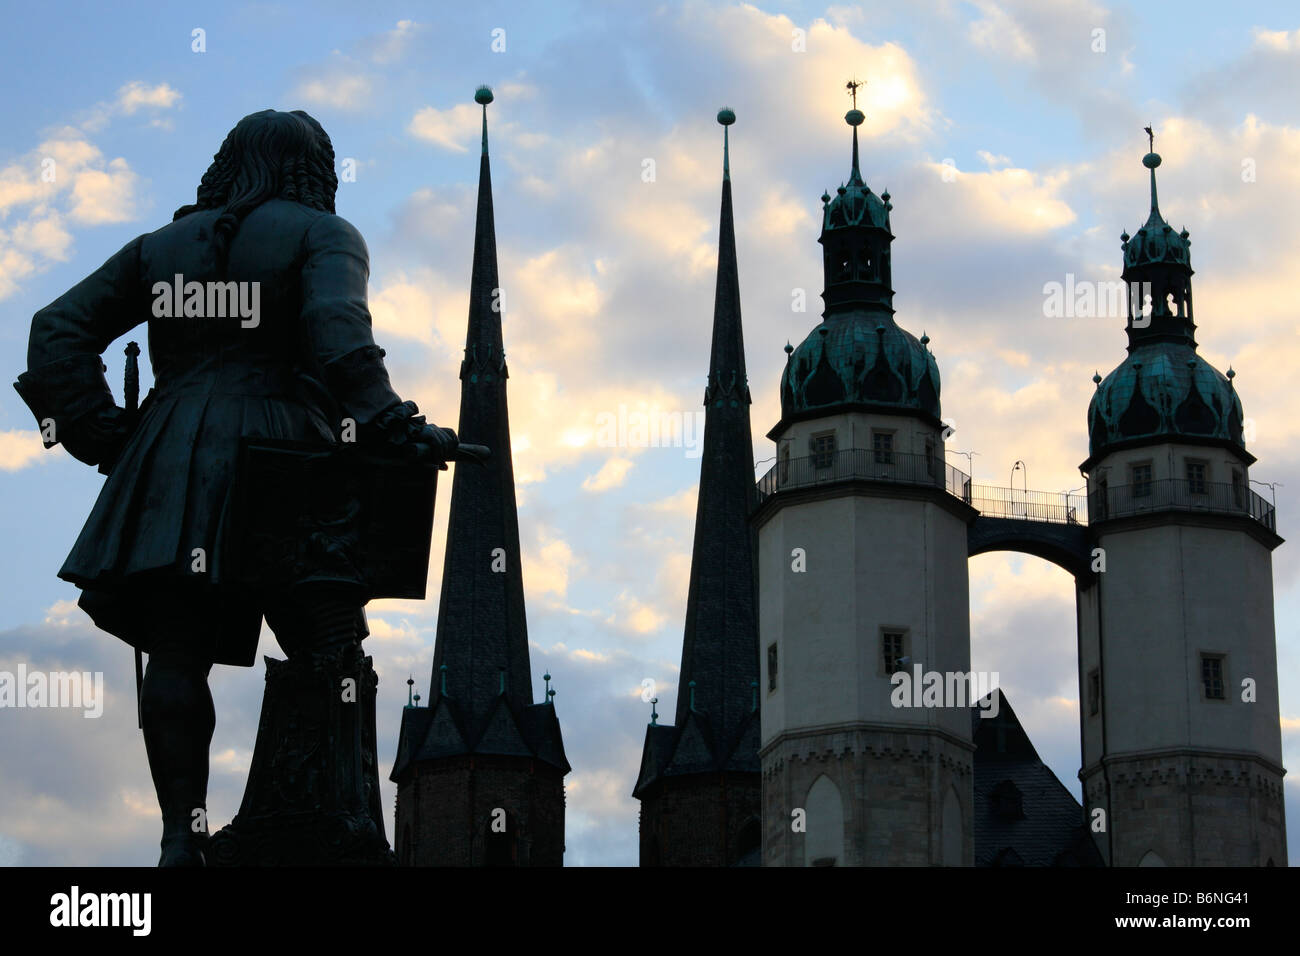 Statue de Georg Friedrich Händel et l'église Marktkirche sur place du marché de Halle (Saale), Allemagne ; Banque D'Images